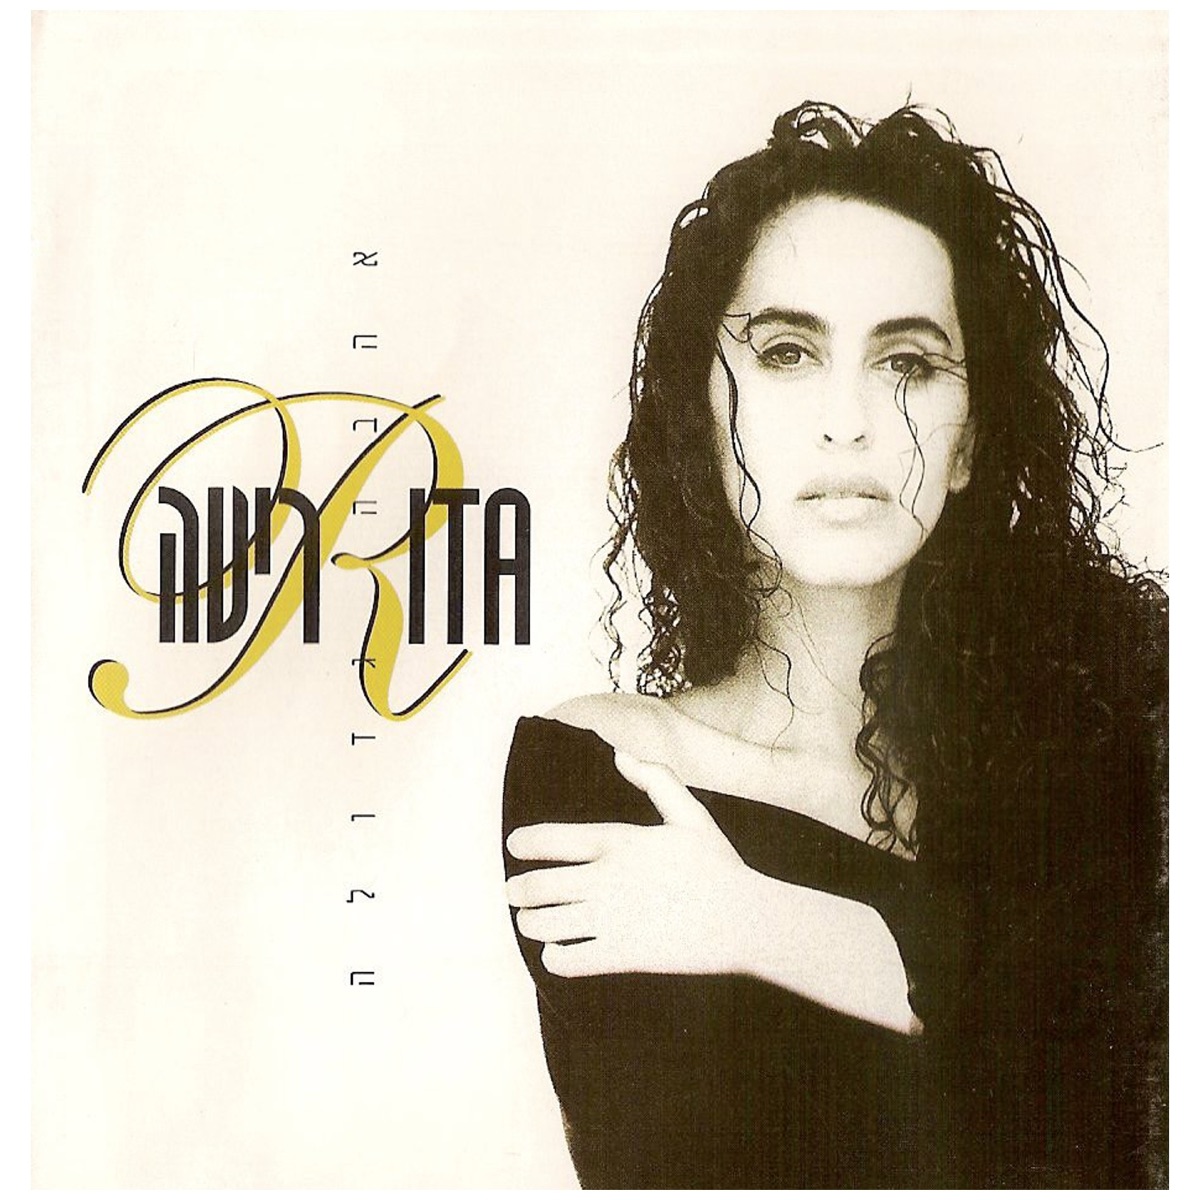 תחנות בזמן: אוסף שירים by Rita on Apple Music